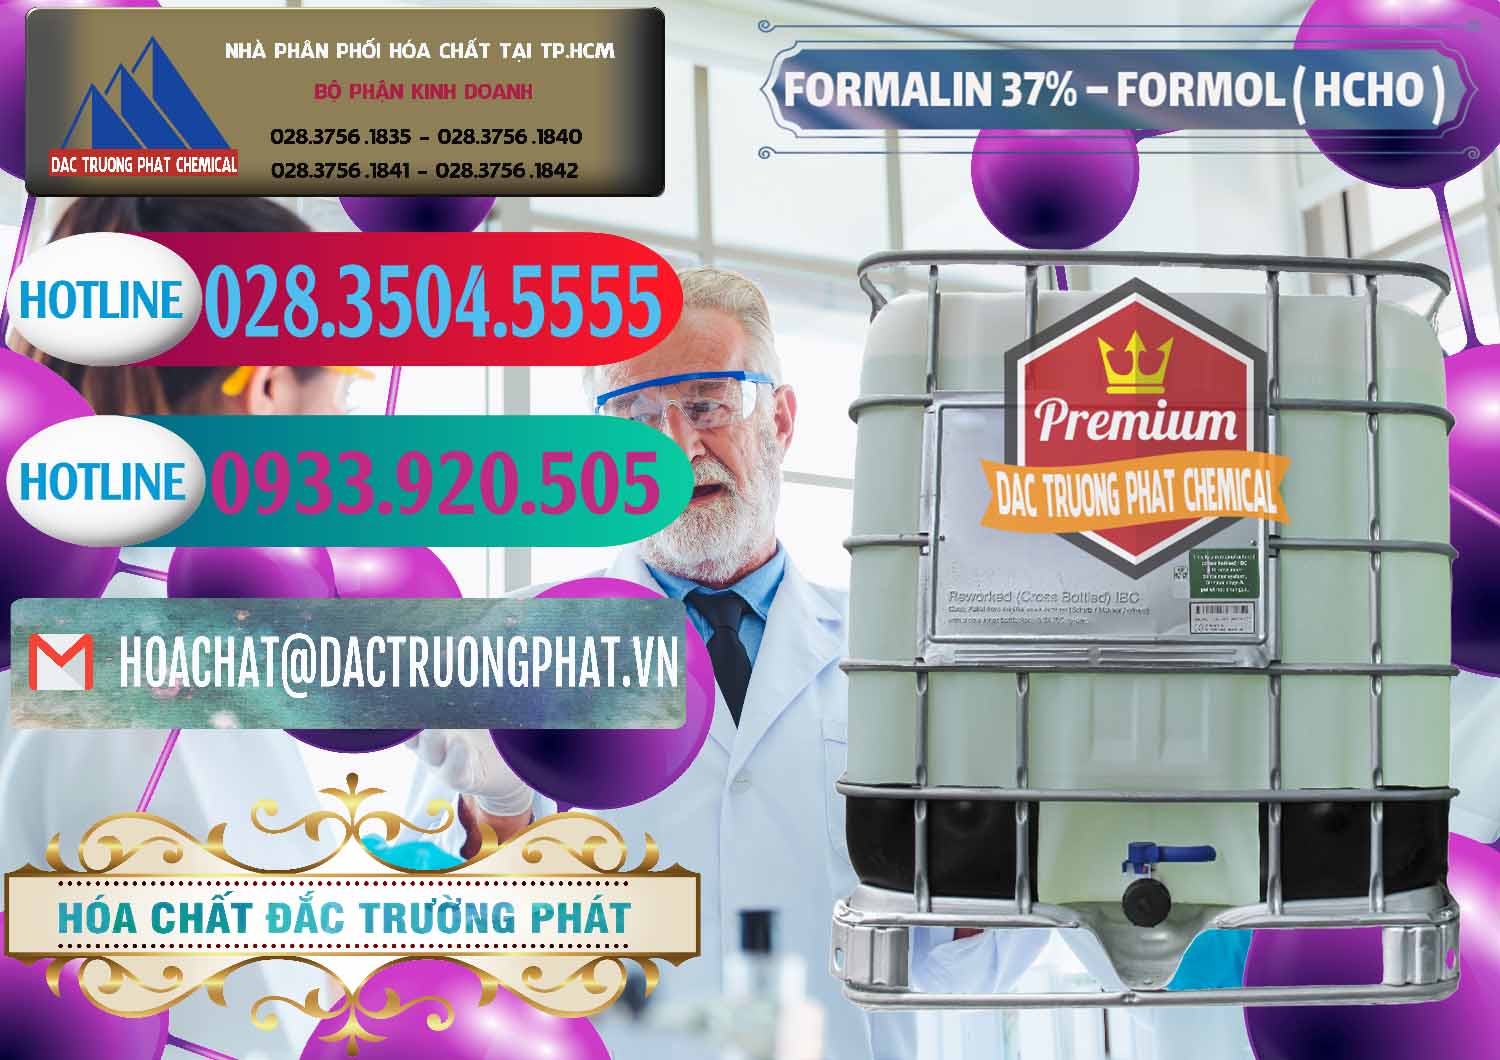 Công ty chuyên cung ứng _ phân phối Formalin - Formol ( HCHO ) 37% Việt Nam - 0187 - Cty cung ứng ( phân phối ) hóa chất tại TP.HCM - truongphat.vn